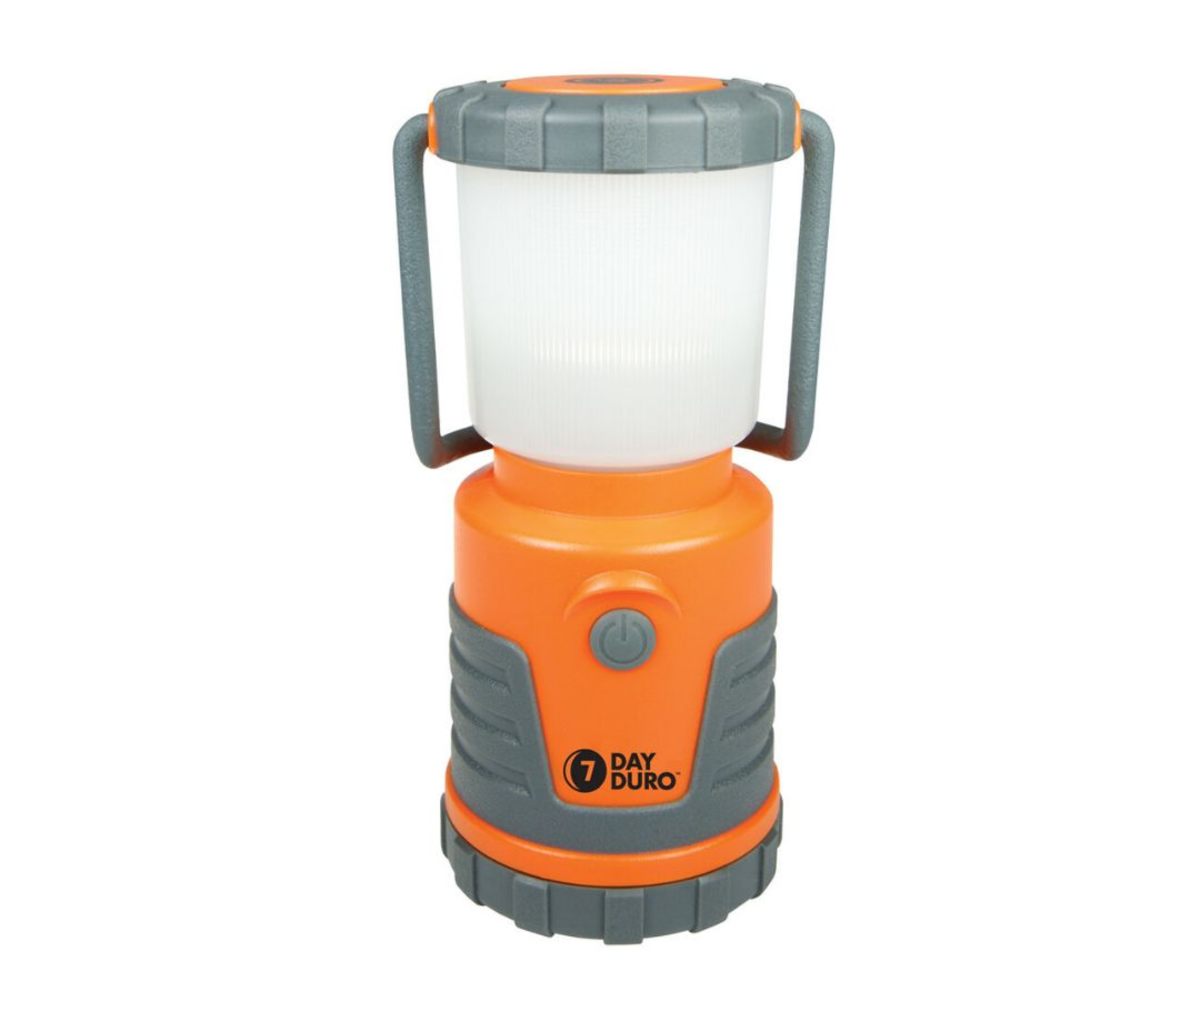 UST 7 Day Duro LED Lantern